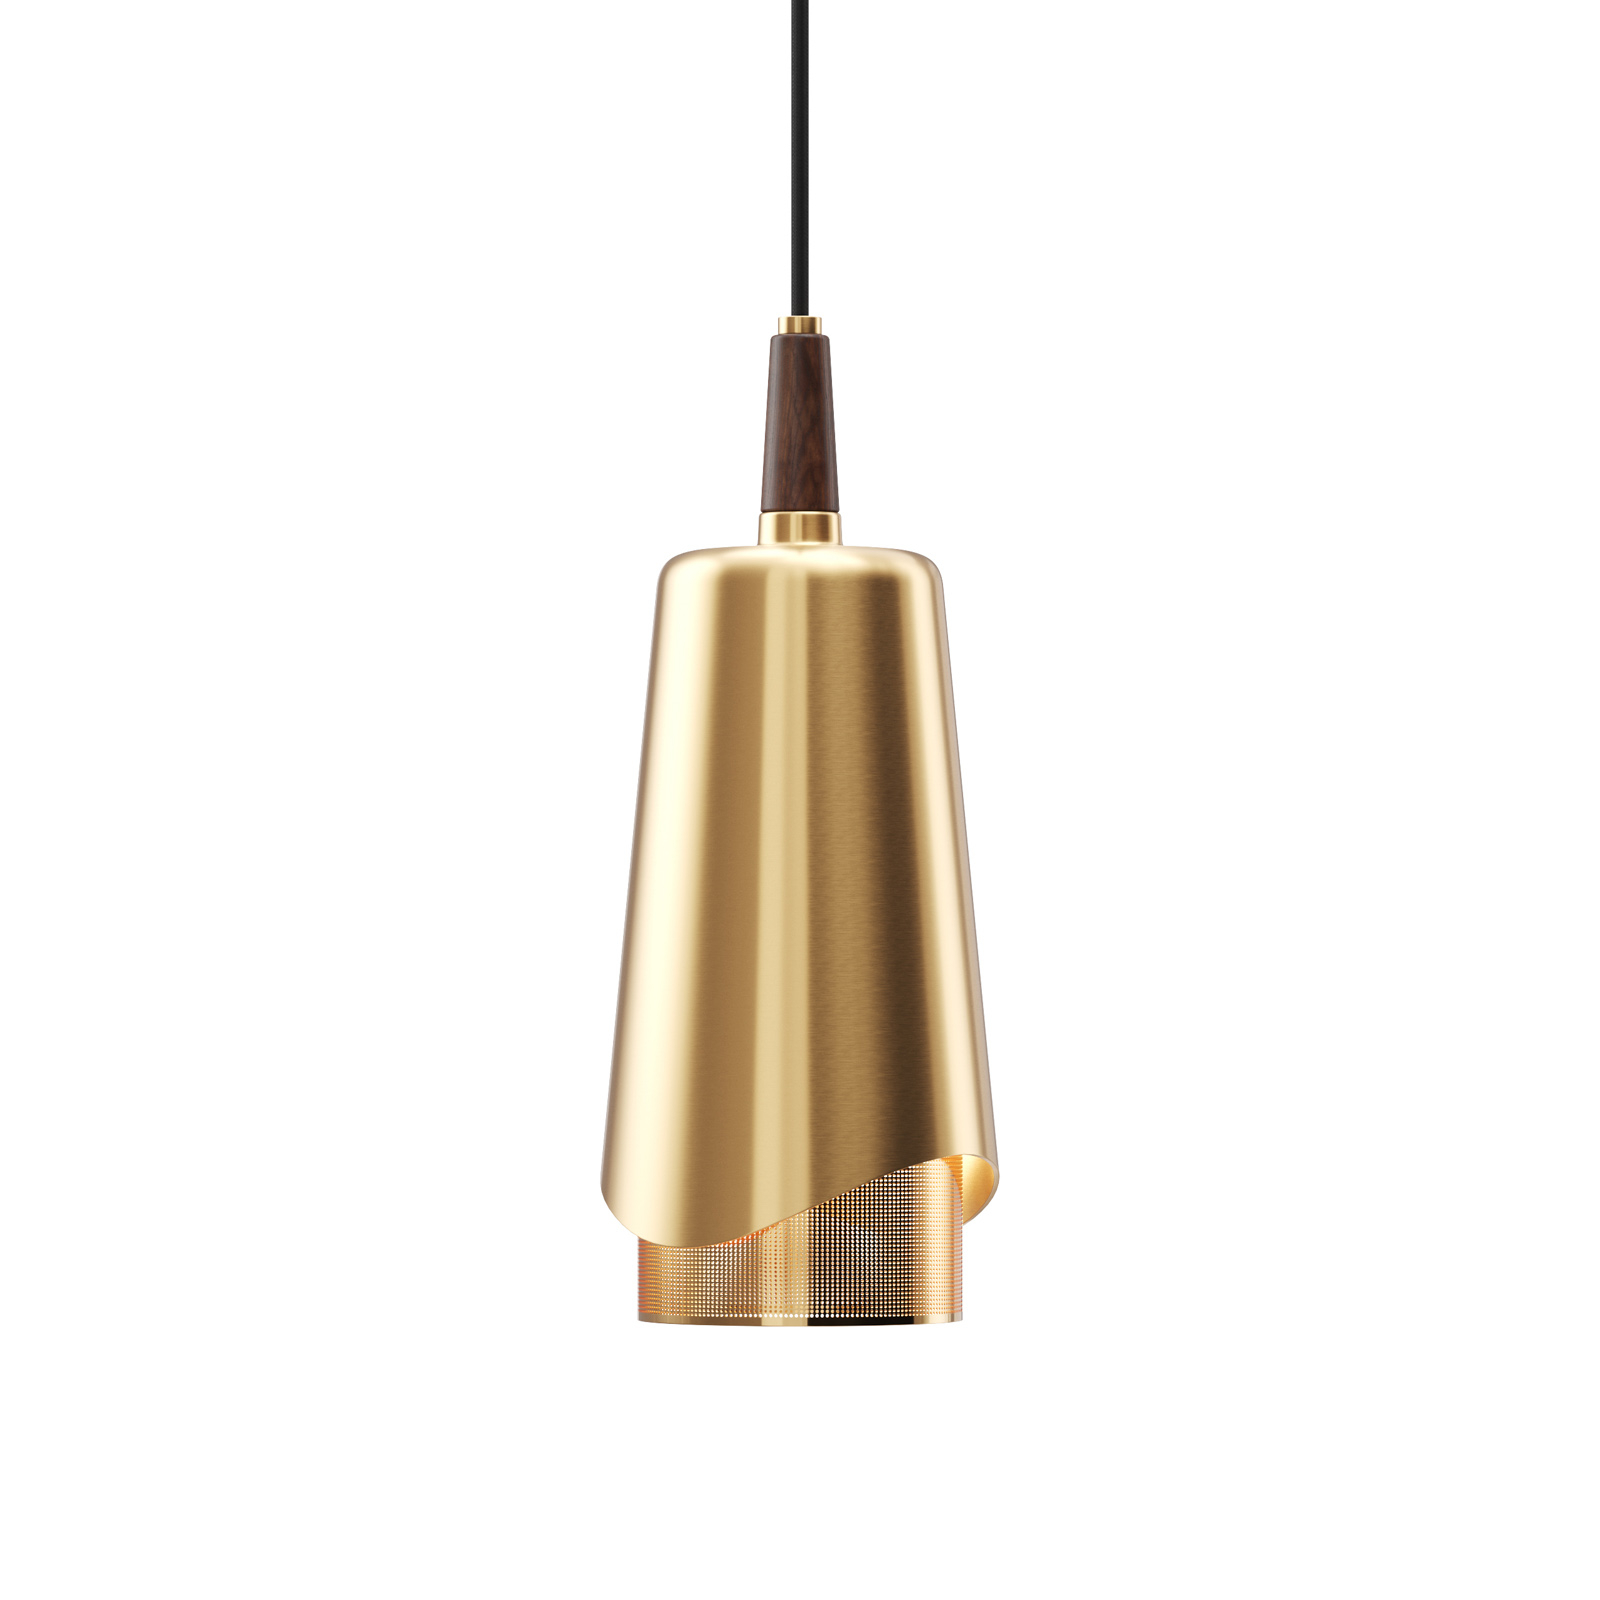 Audo Umanoff pendant light, brass and walnut